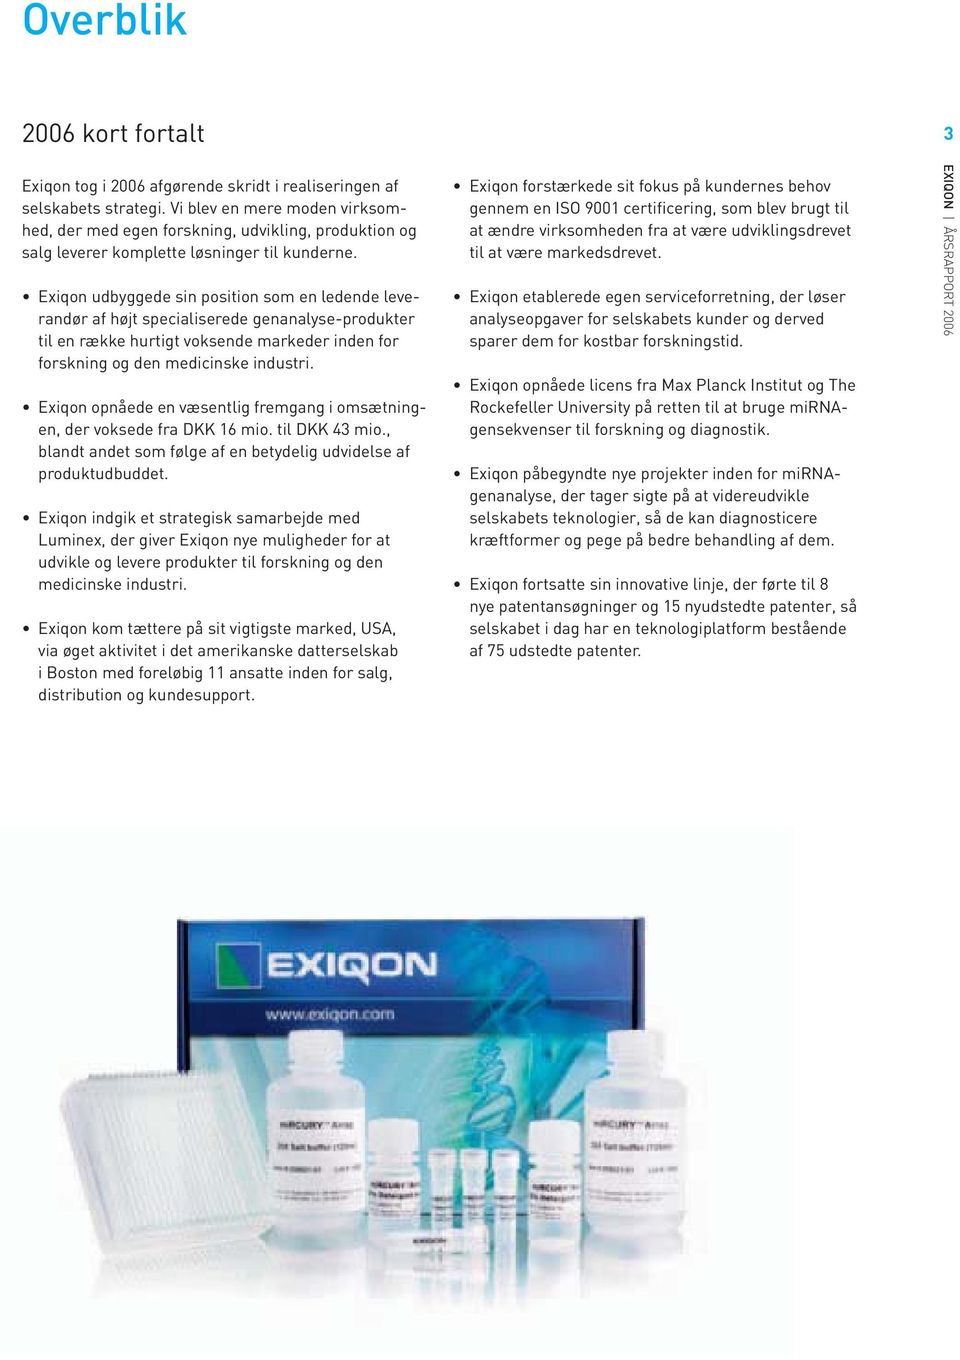 Exiqon udbyggede sin position som en ledende leverandør af højt specialiserede genanalyse-produkter til en række hurtigt voksende markeder inden for forskning og den medicinske industri.